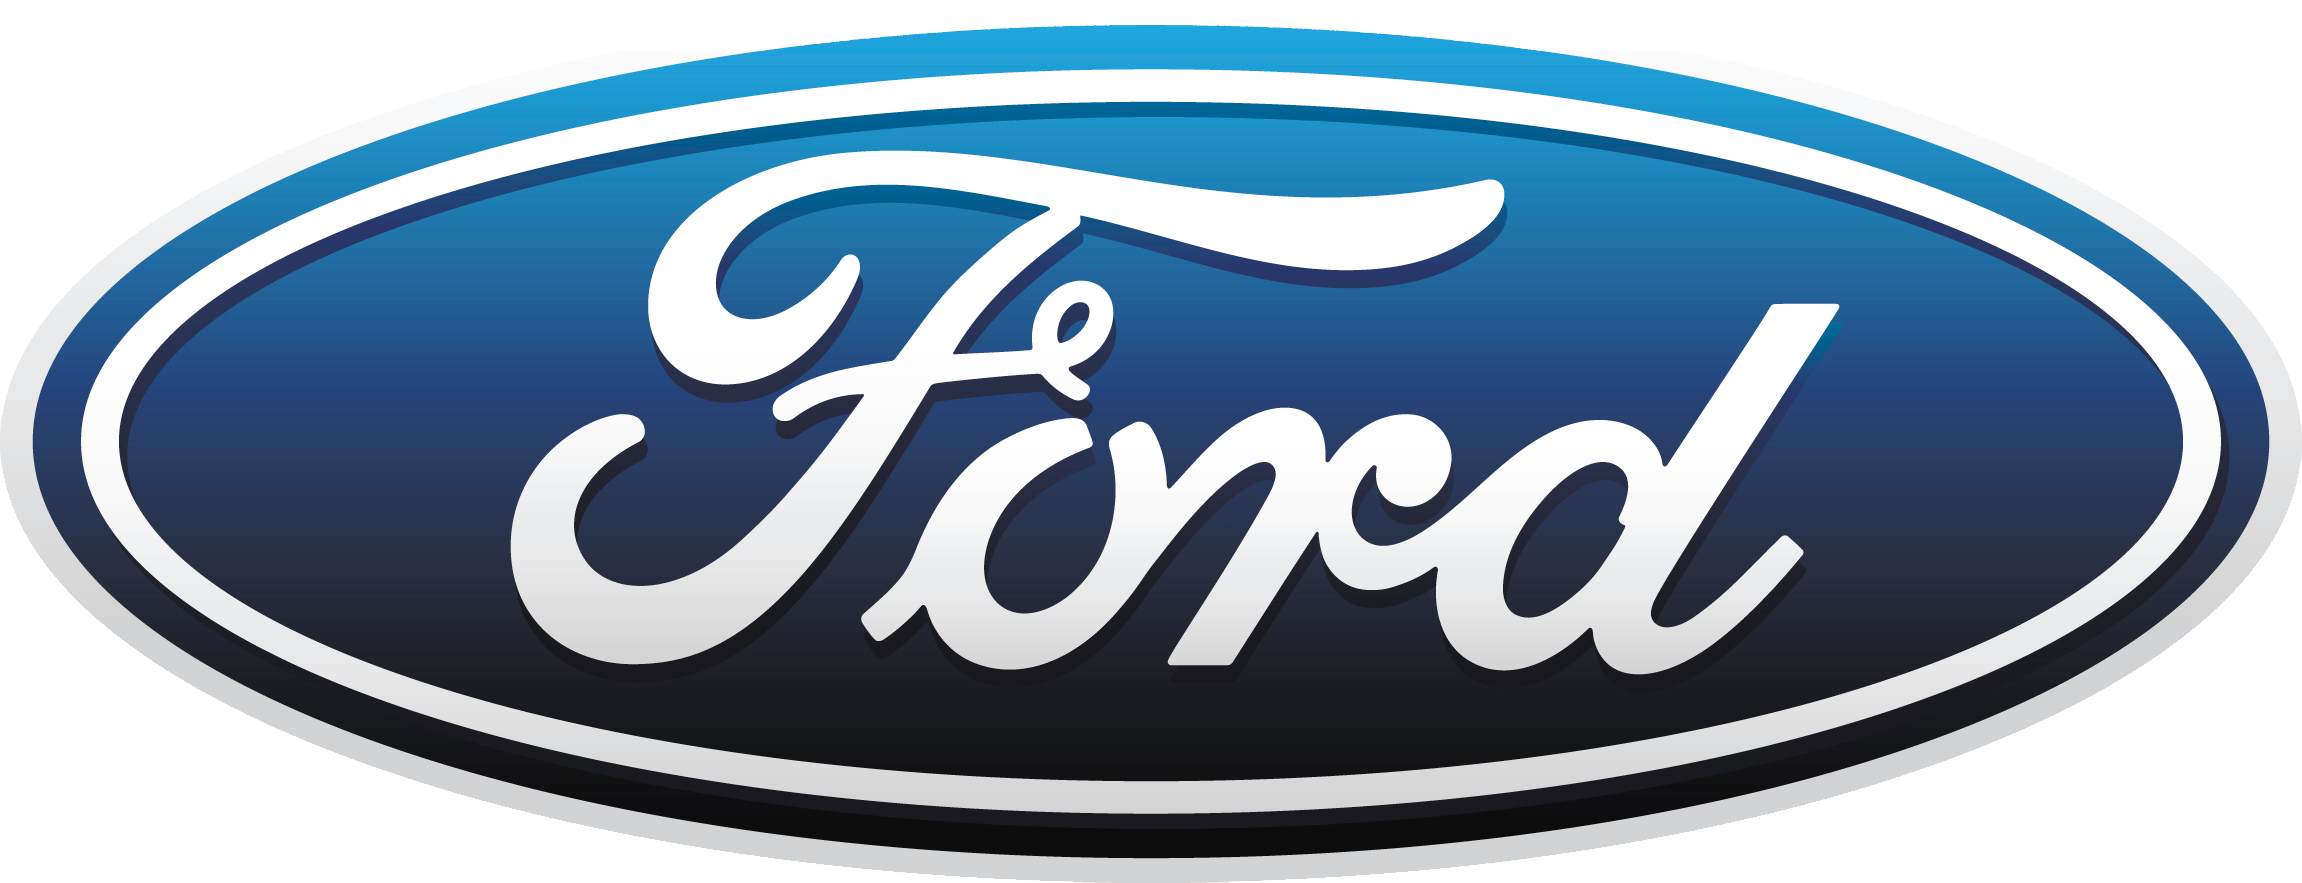 Ford logosu